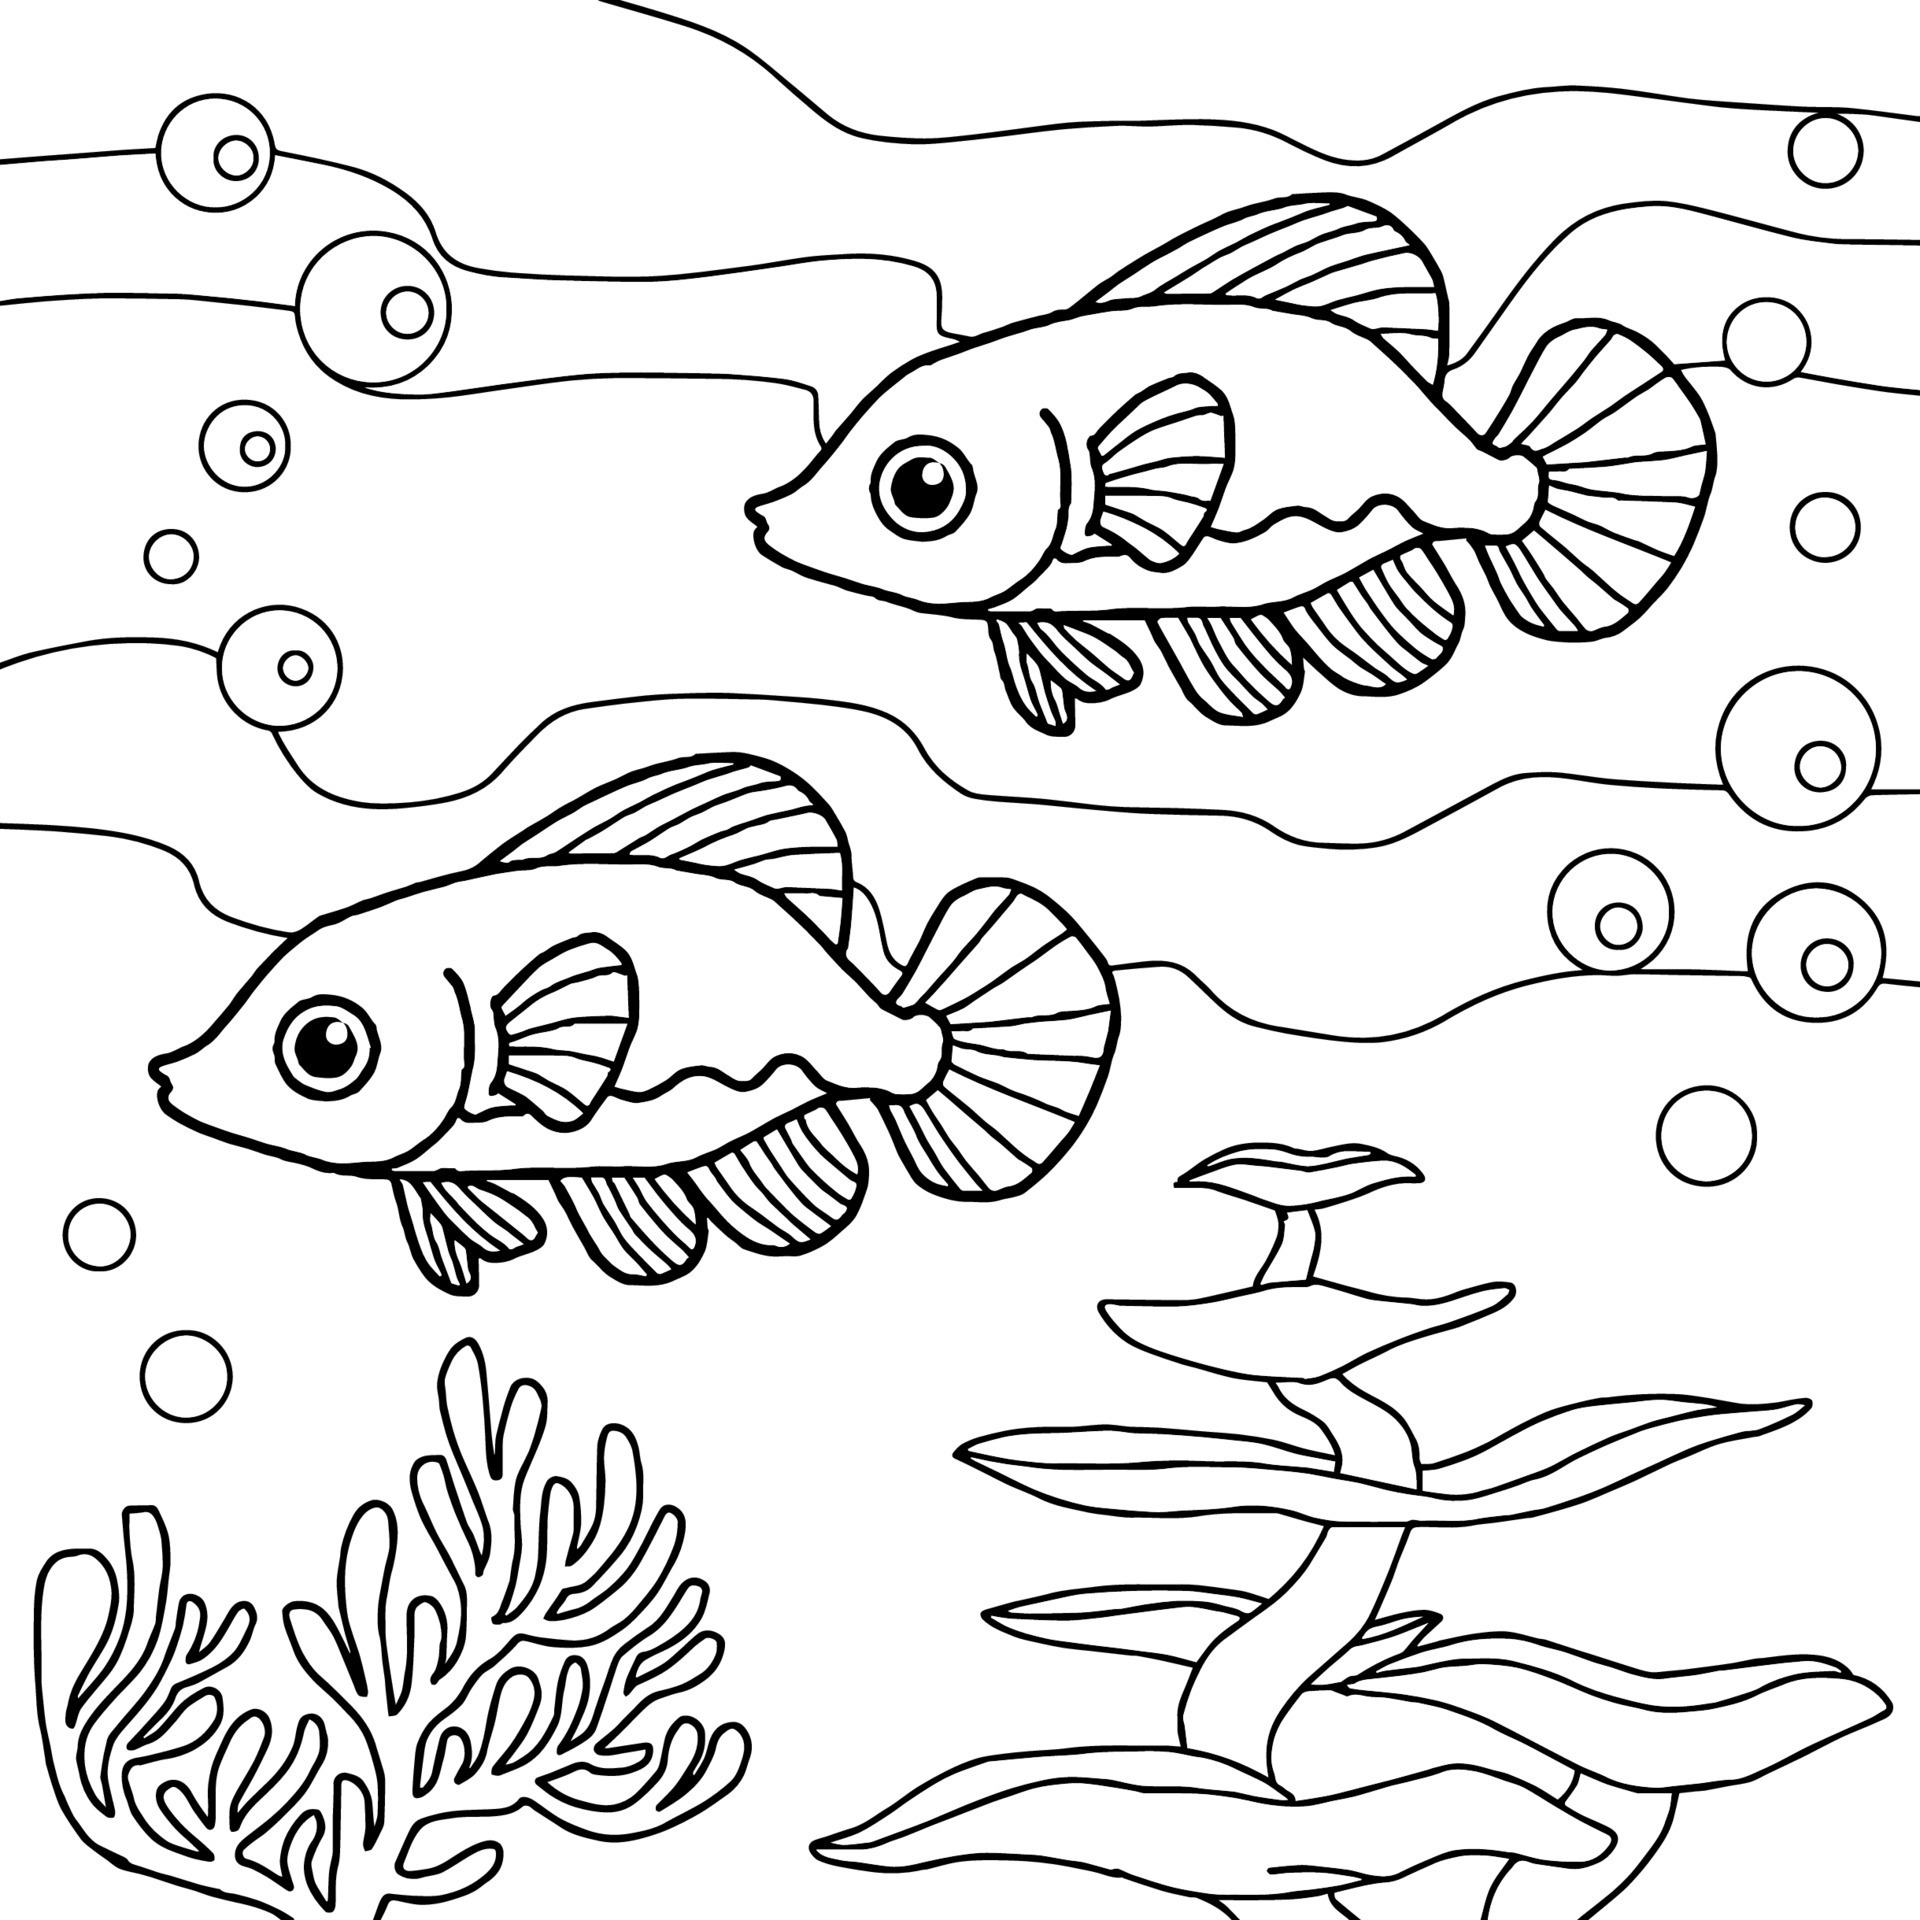 desenho vetorial para colorir para peixe infantil debaixo d'água 9921911  Vetor no Vecteezy